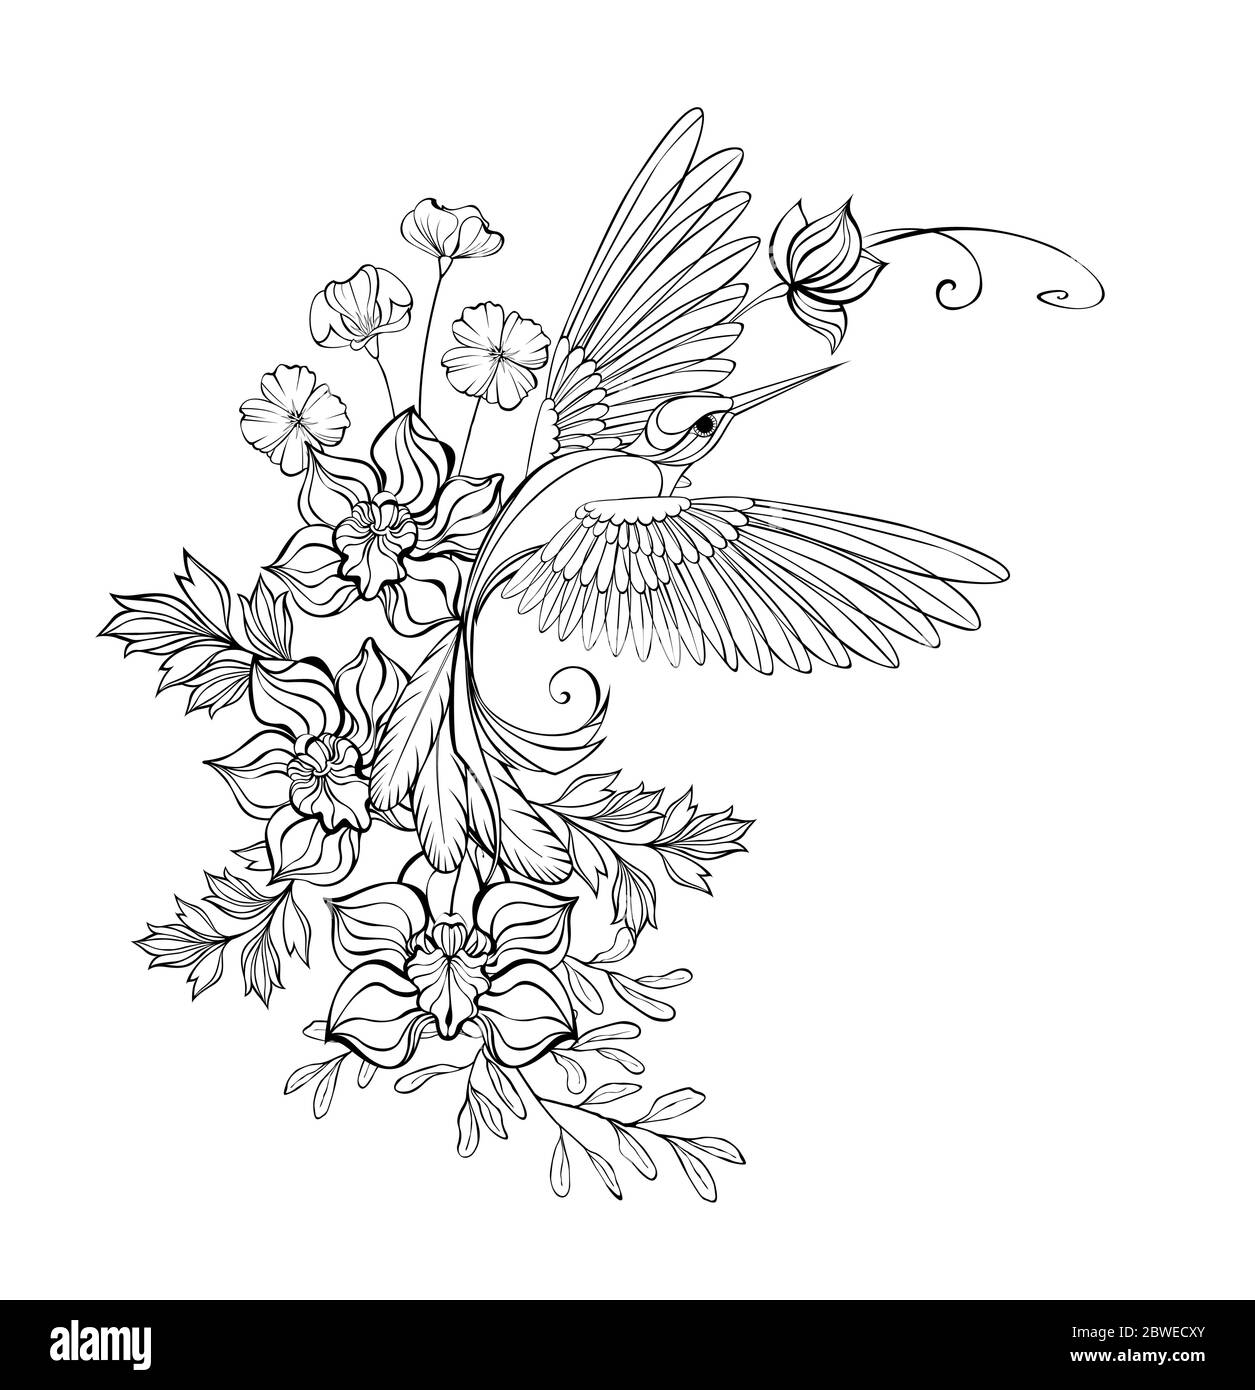 Artistiquement dessiné, monochrome, contour, colibri volant avec orchidées de contour et fleurs sauvages sur fond blanc. Dessin de contour. Illustration de Vecteur